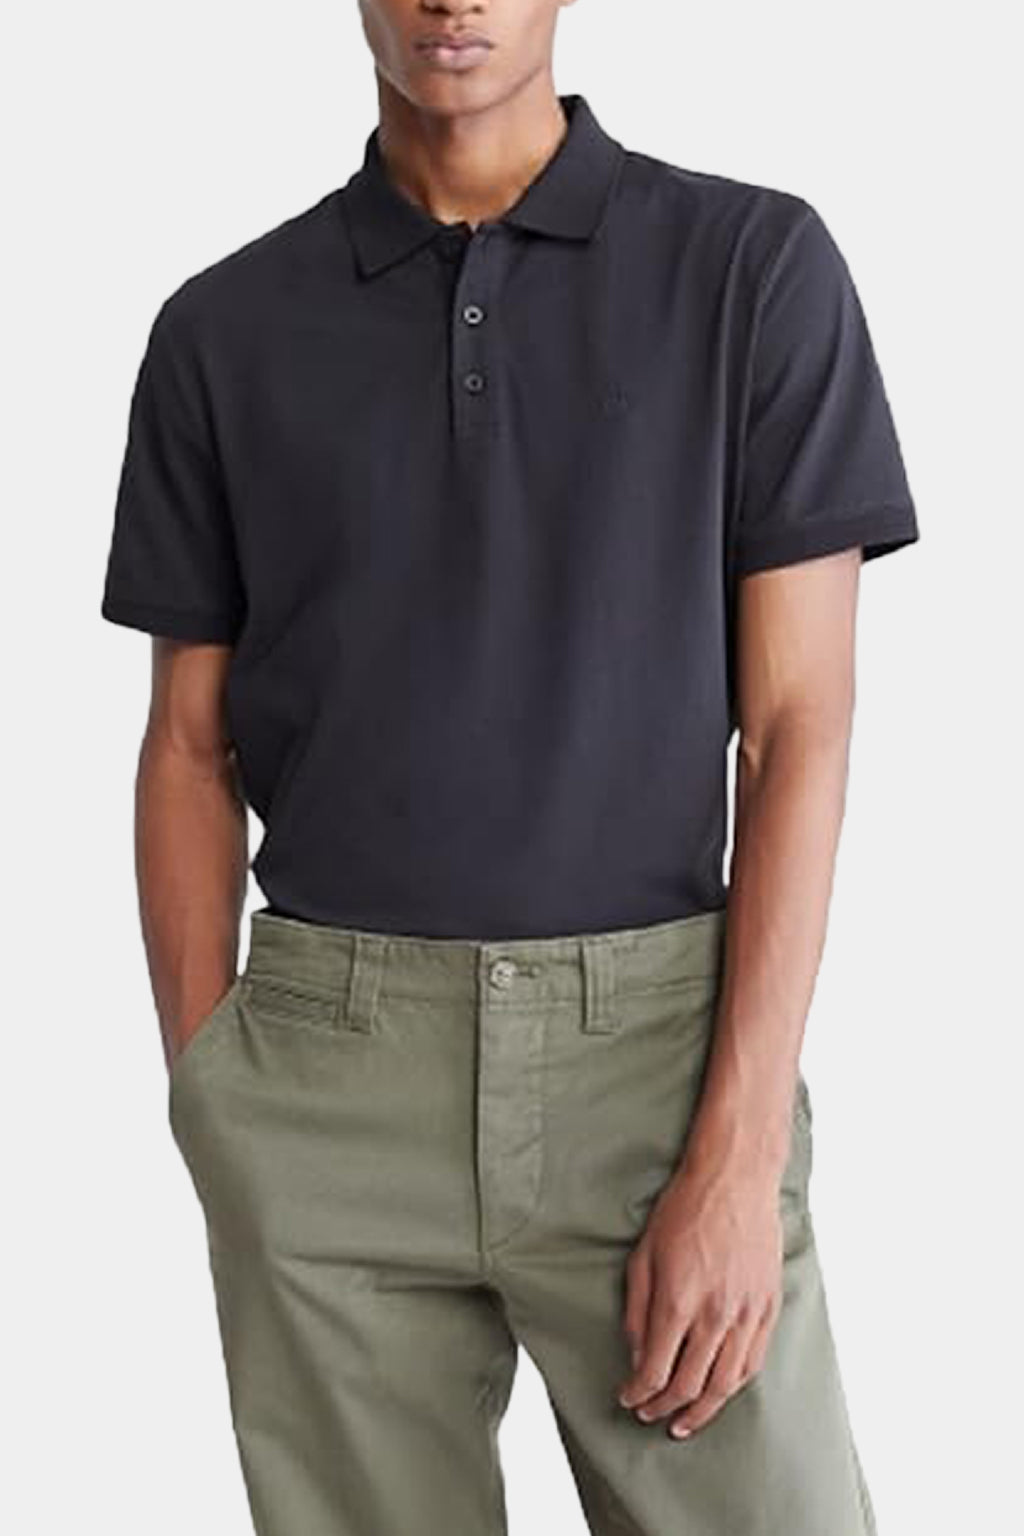 Calvin Klein - Men's Smooth cotton polo t-shirt